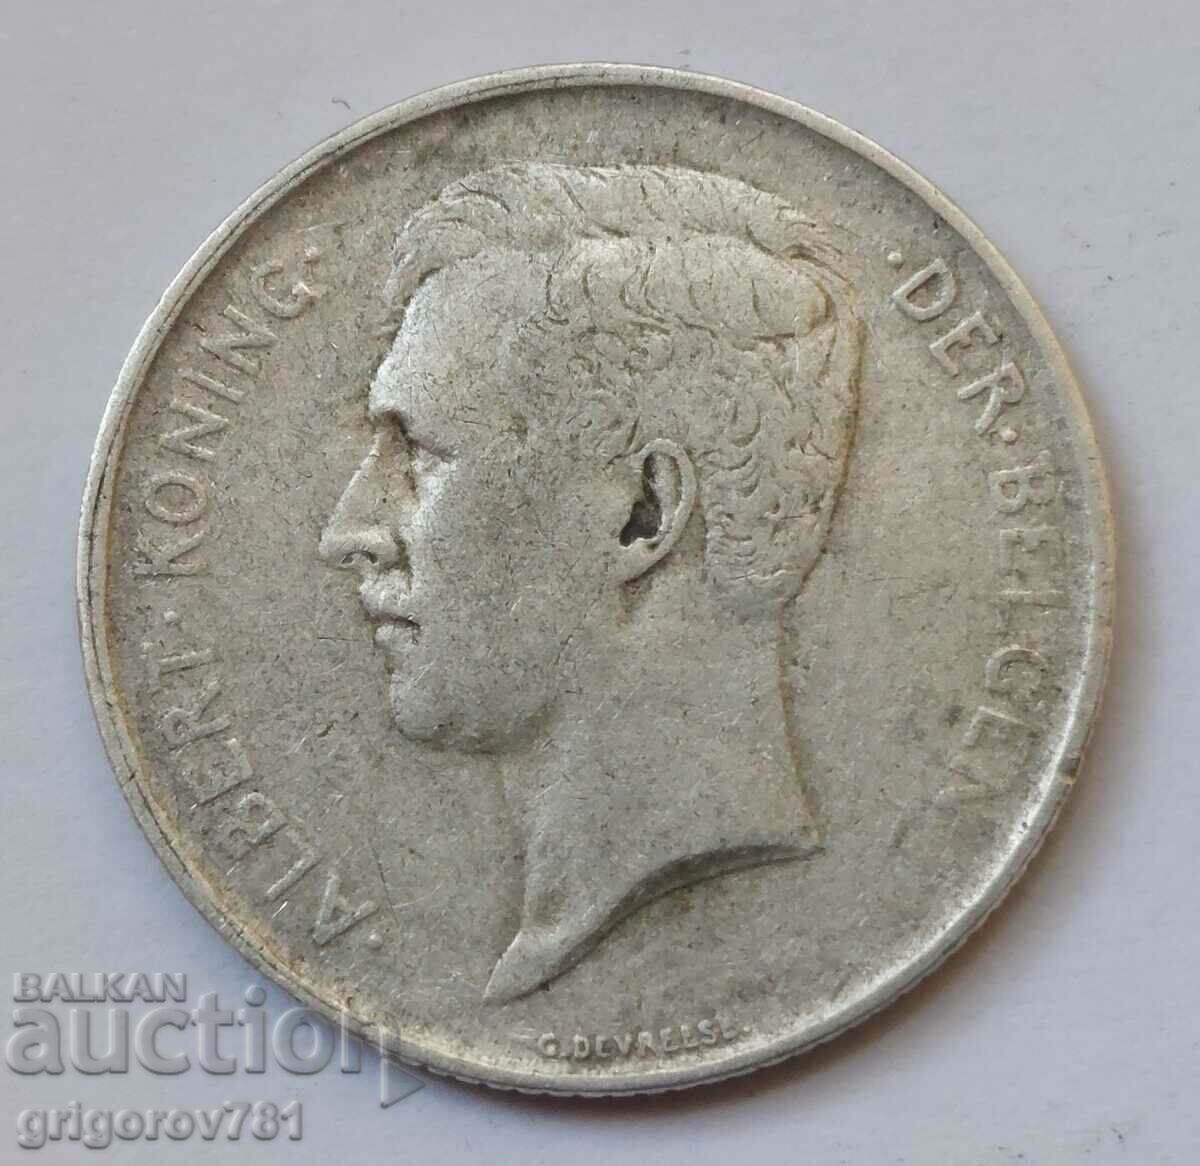 Ασημένιο 1 φράγκου Βέλγιο 1910 - ασημένιο νόμισμα #62